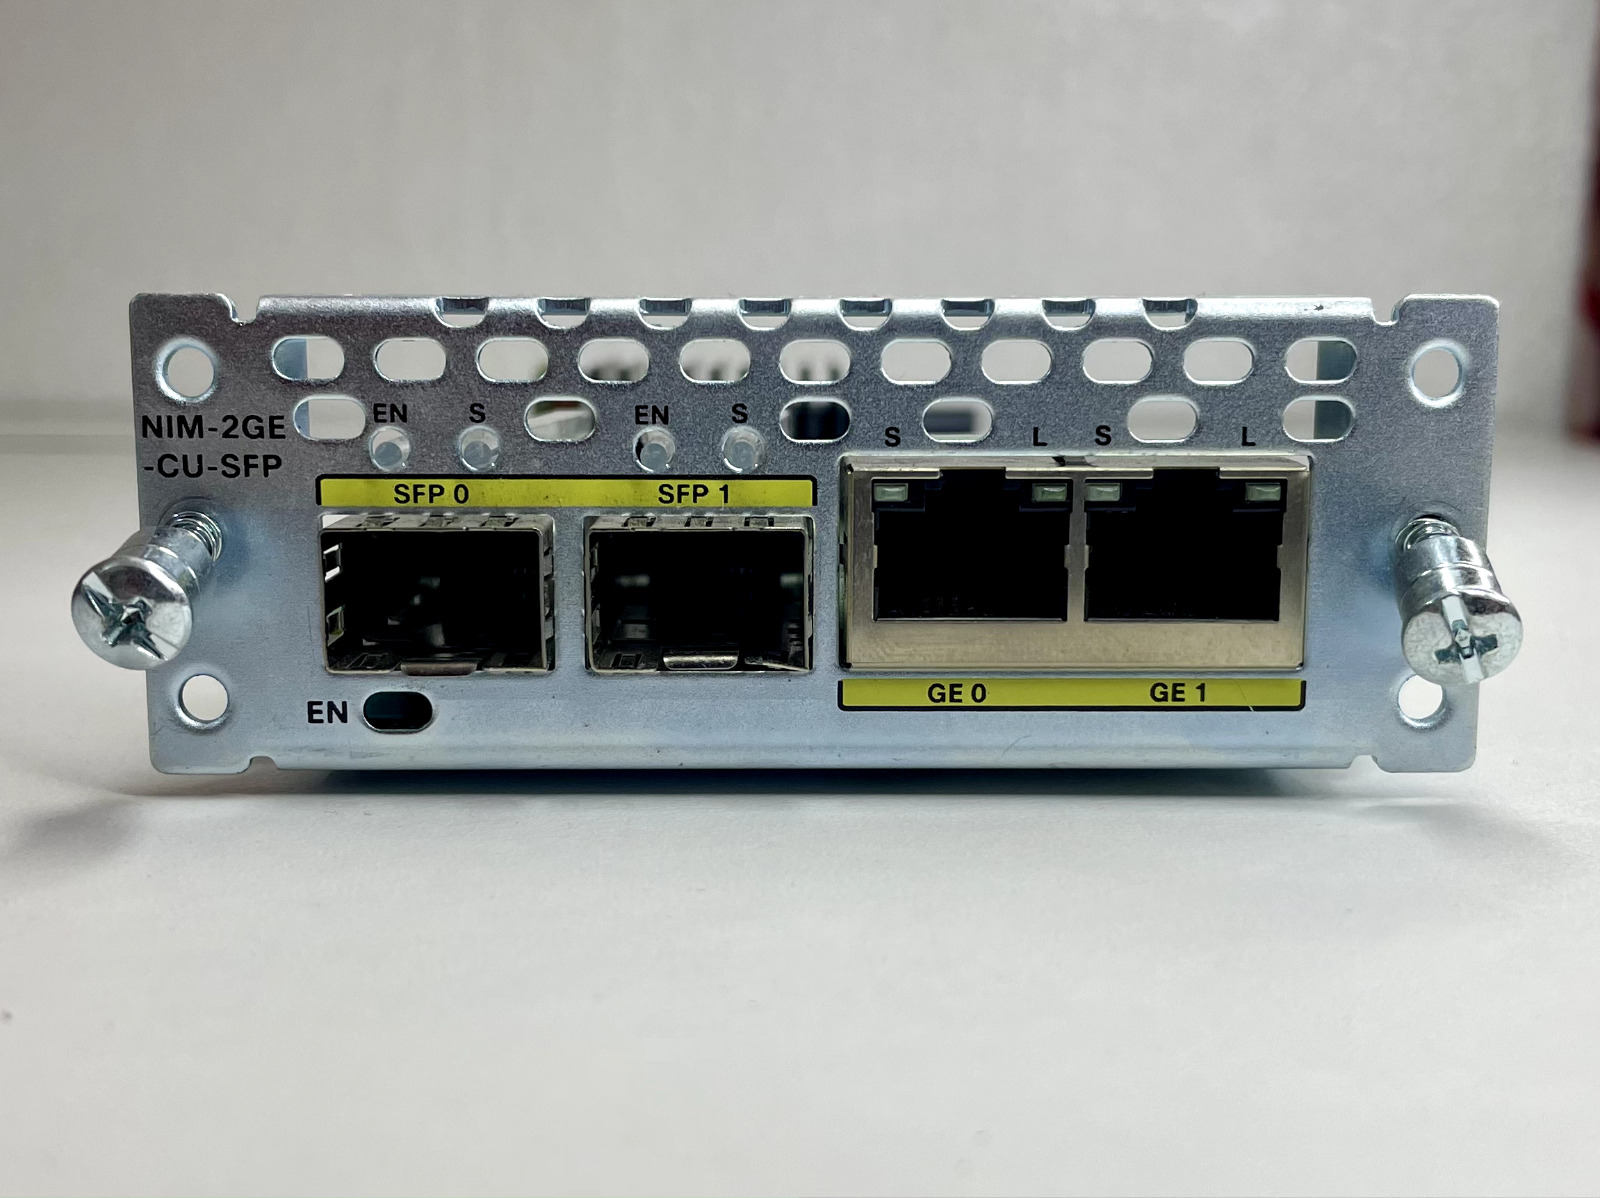 Cisco NIM-2GE-CU-SFP 2-port Gigabit Ethernet dual-mode GE/SFP Module